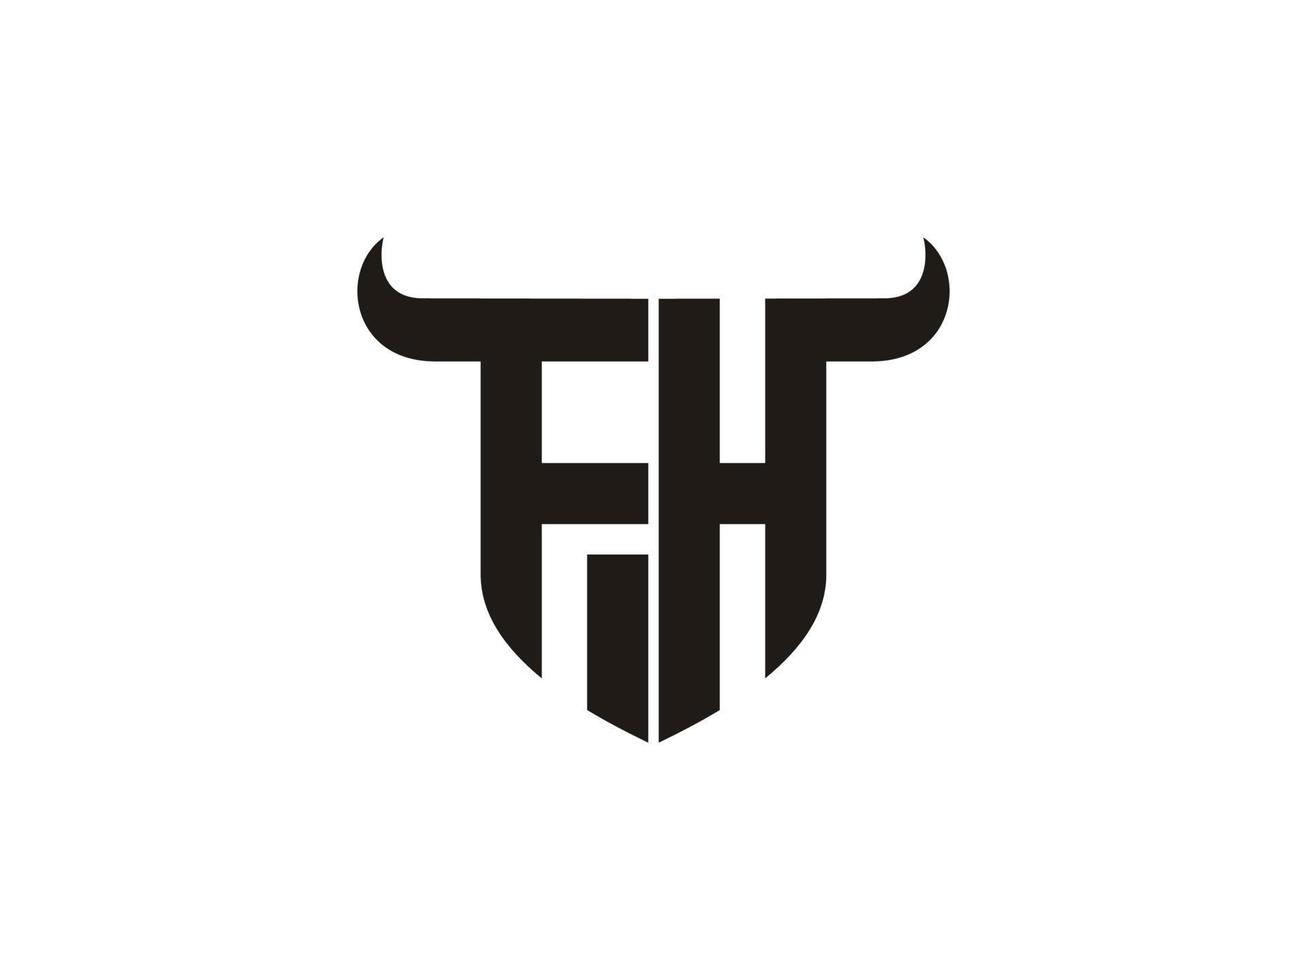 diseño inicial del logo del toro fh. vector